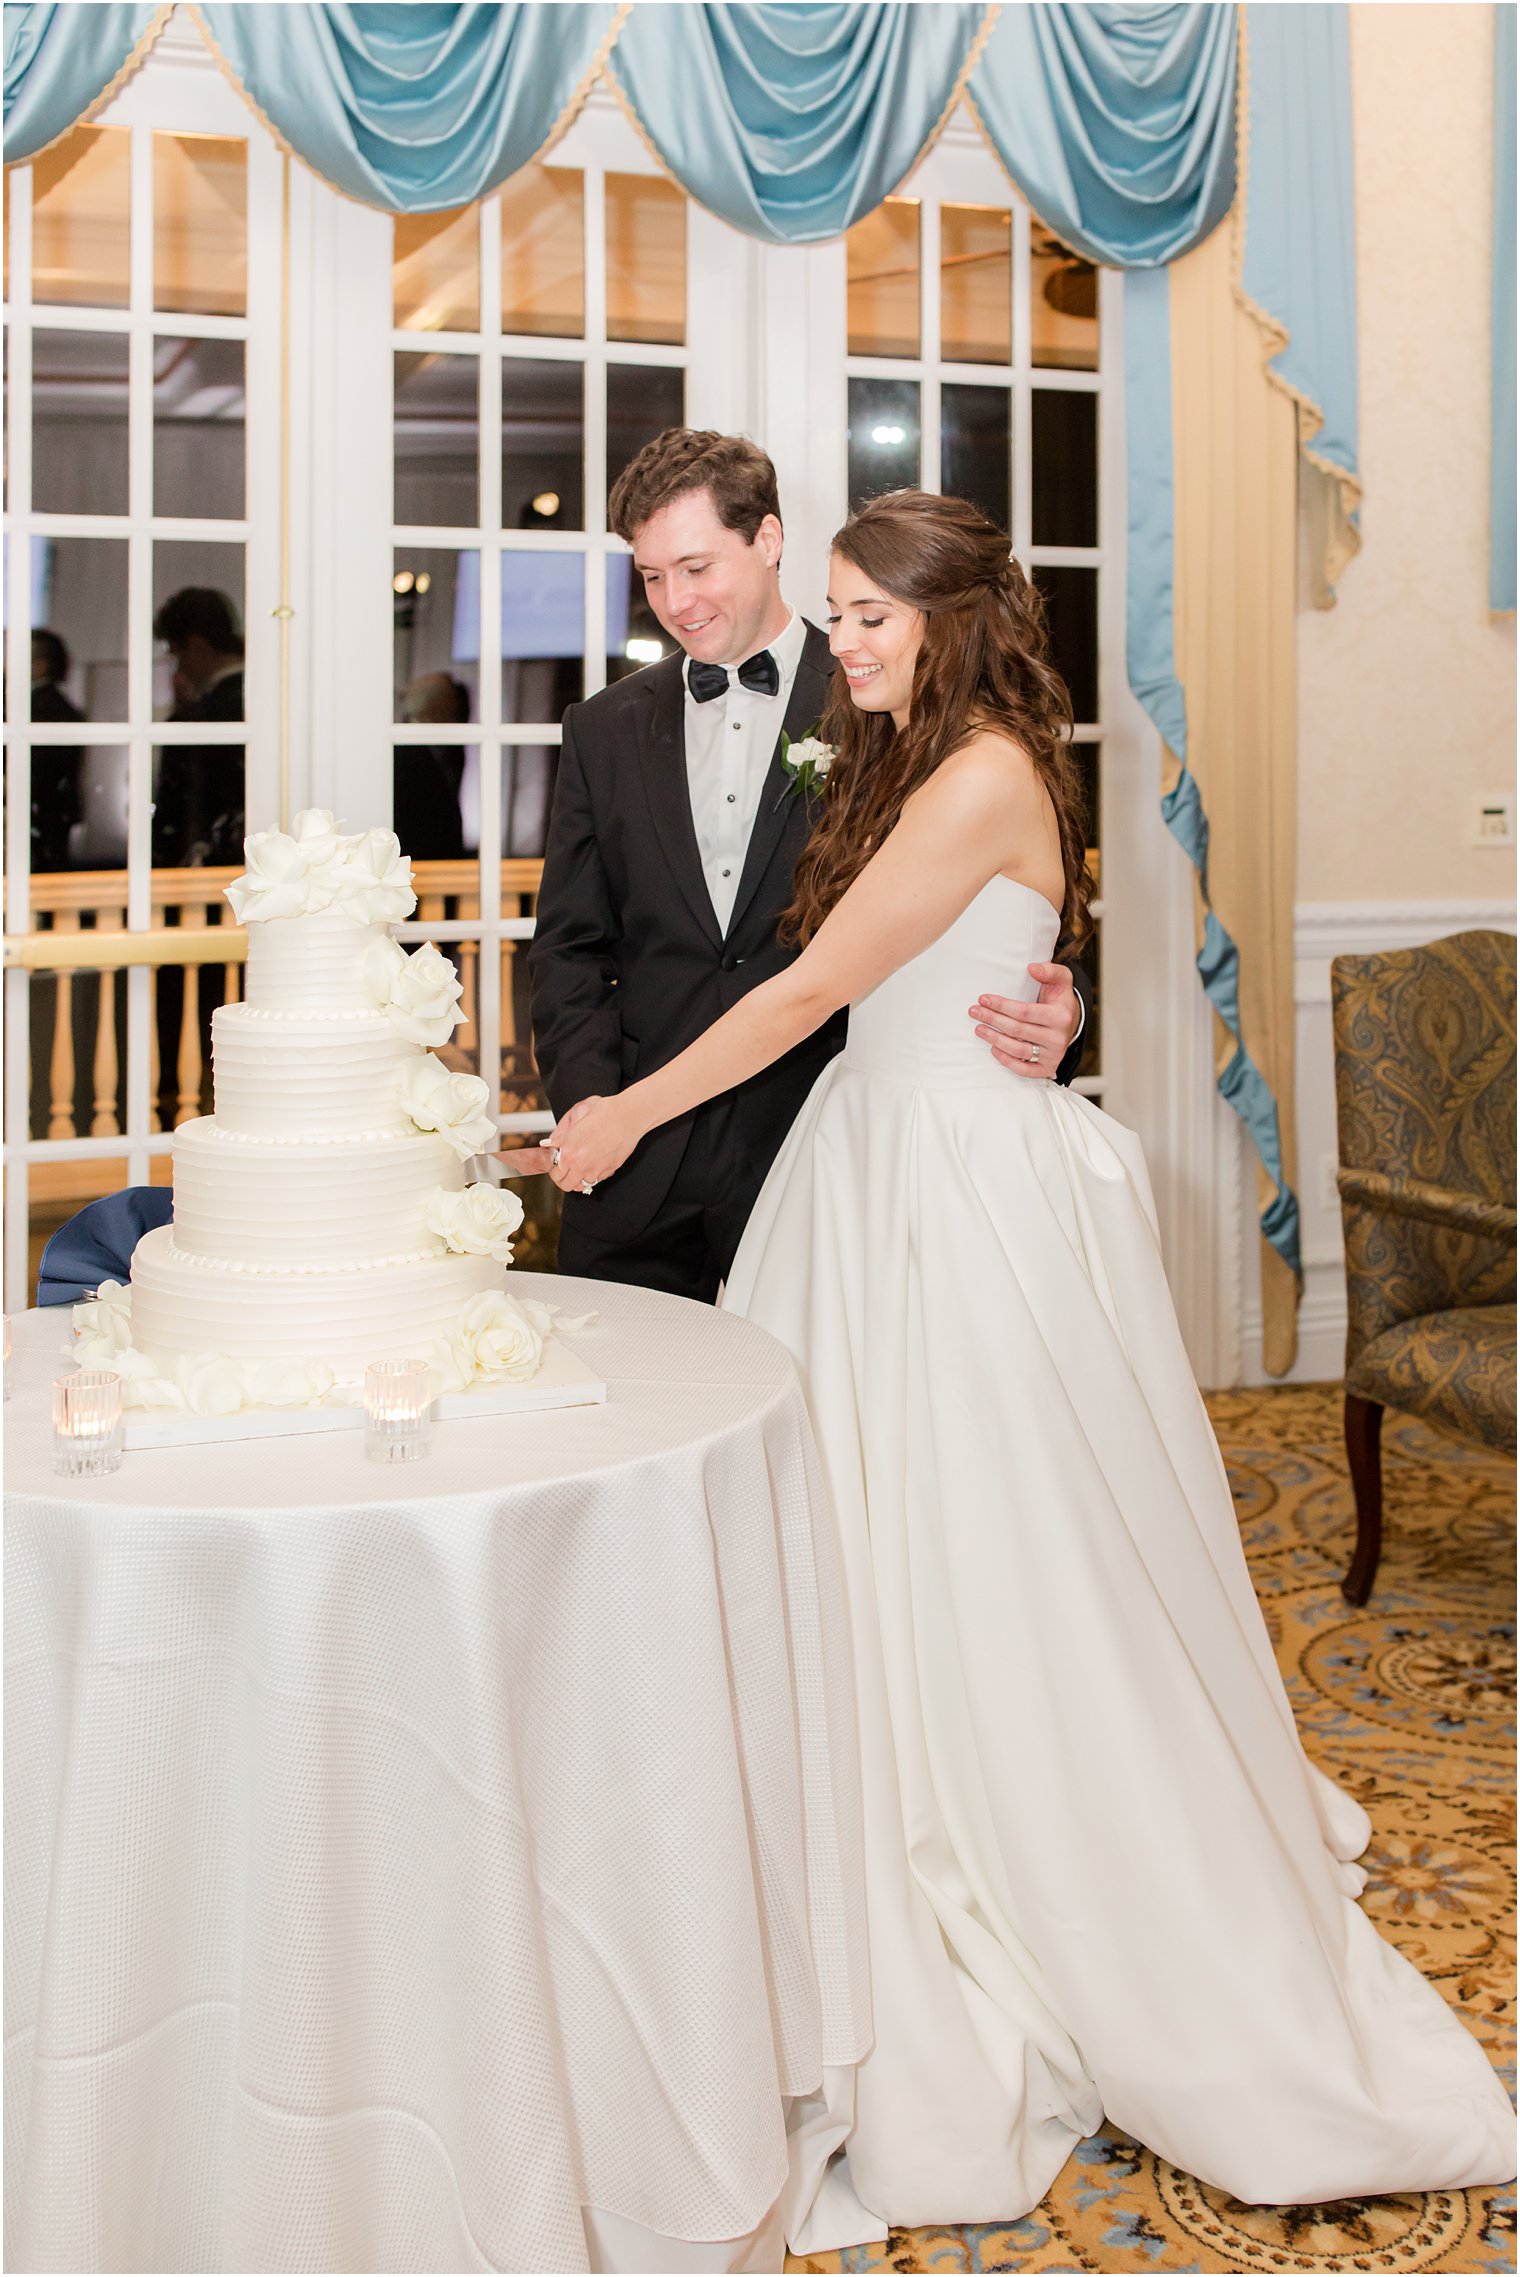 bride and groom cut wedding cake at Farmingdale NJ wedding reception